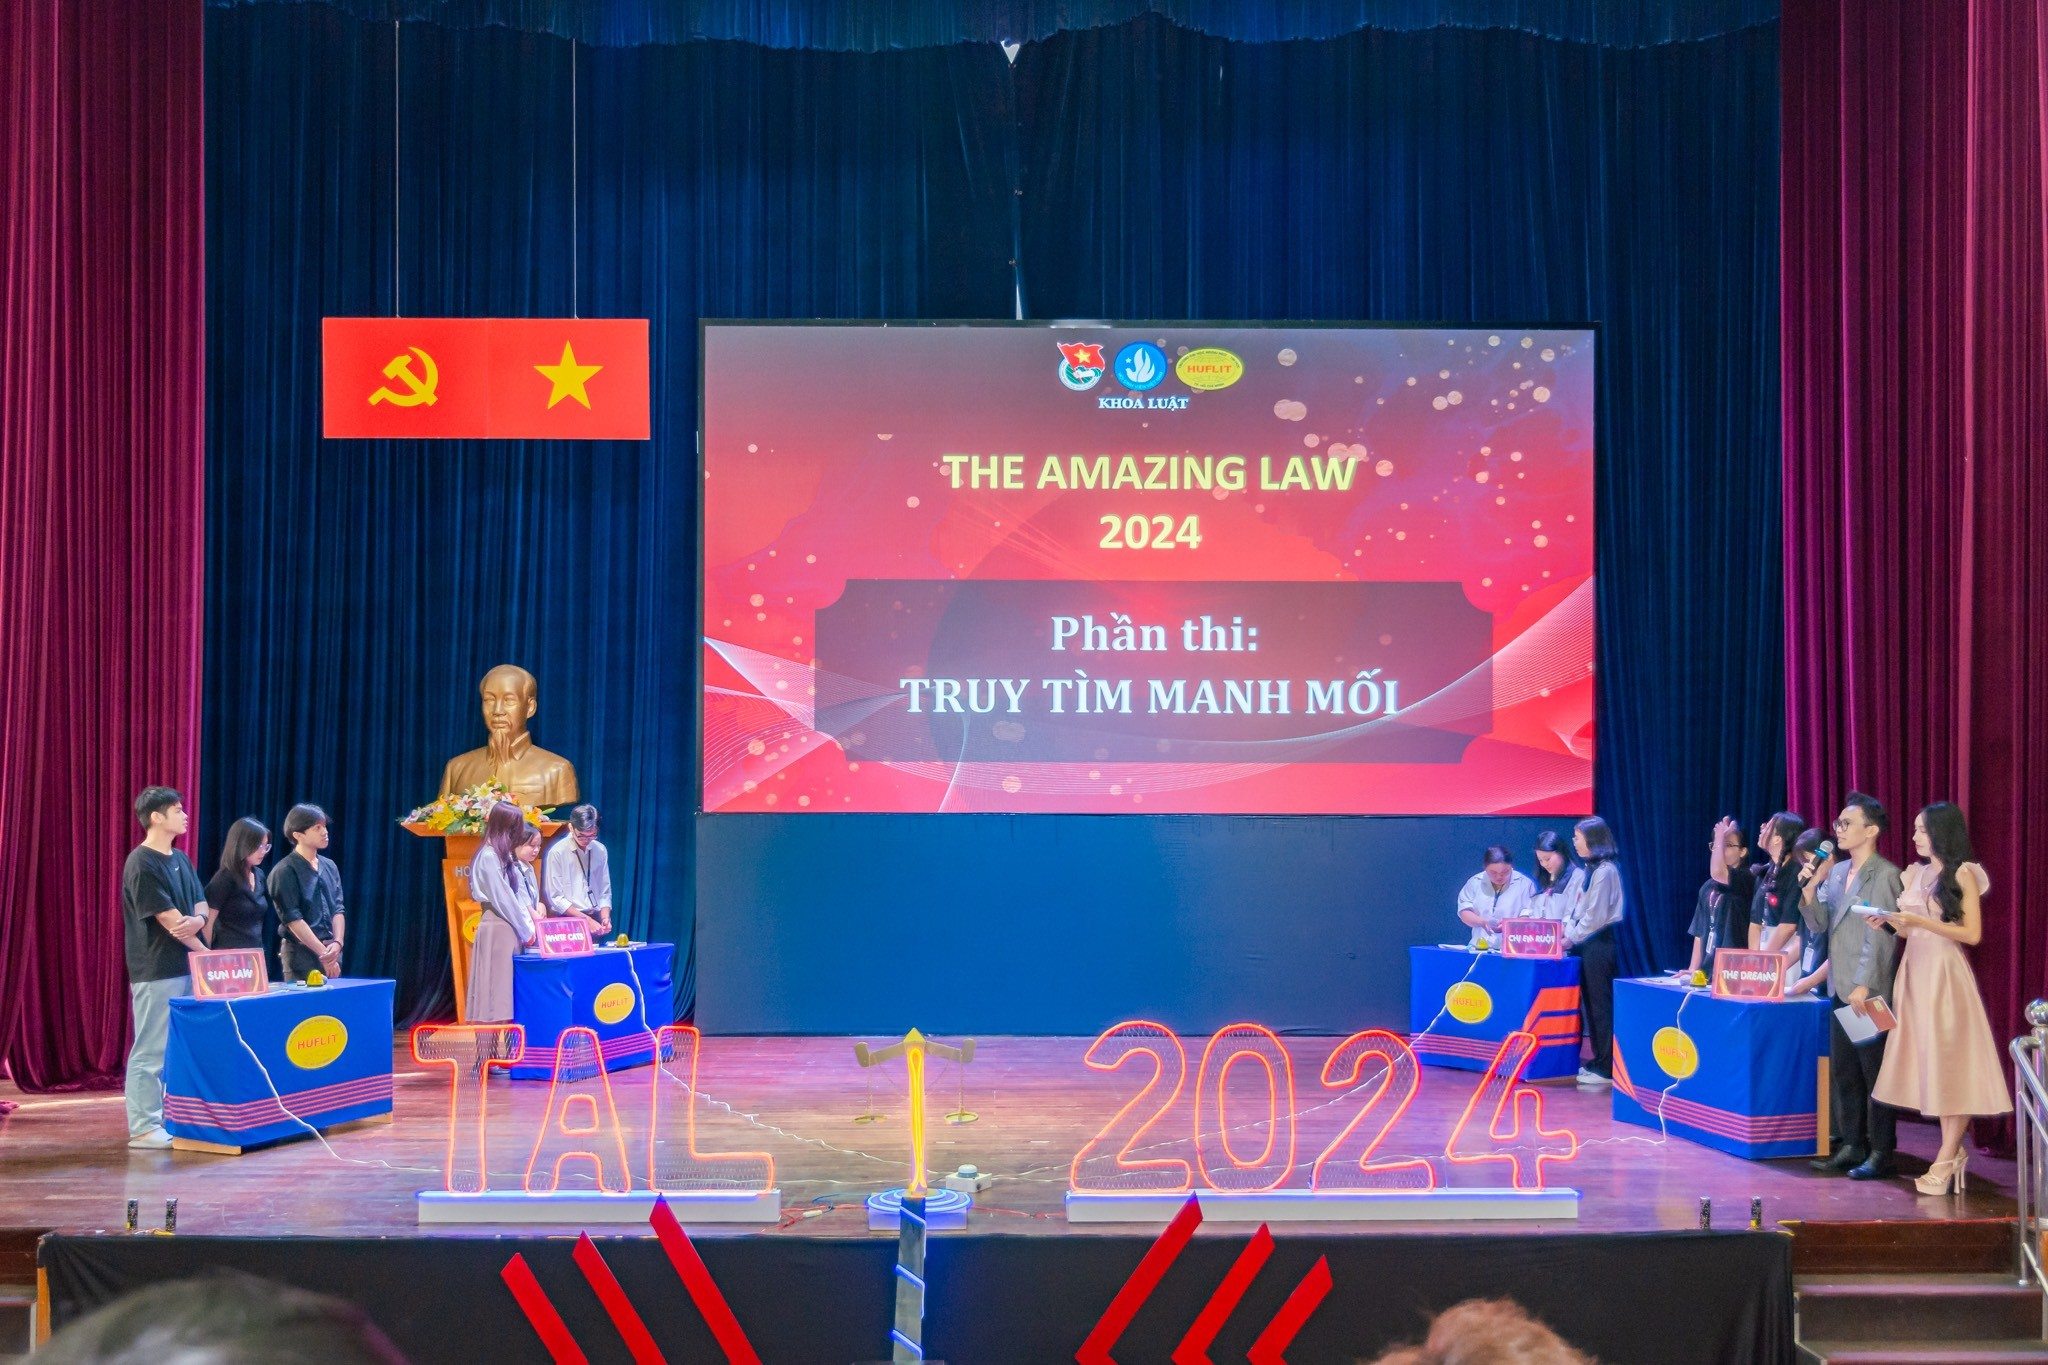 Hội thi Tìm hiểu pháp luật “The Amazing Law” năm 2024